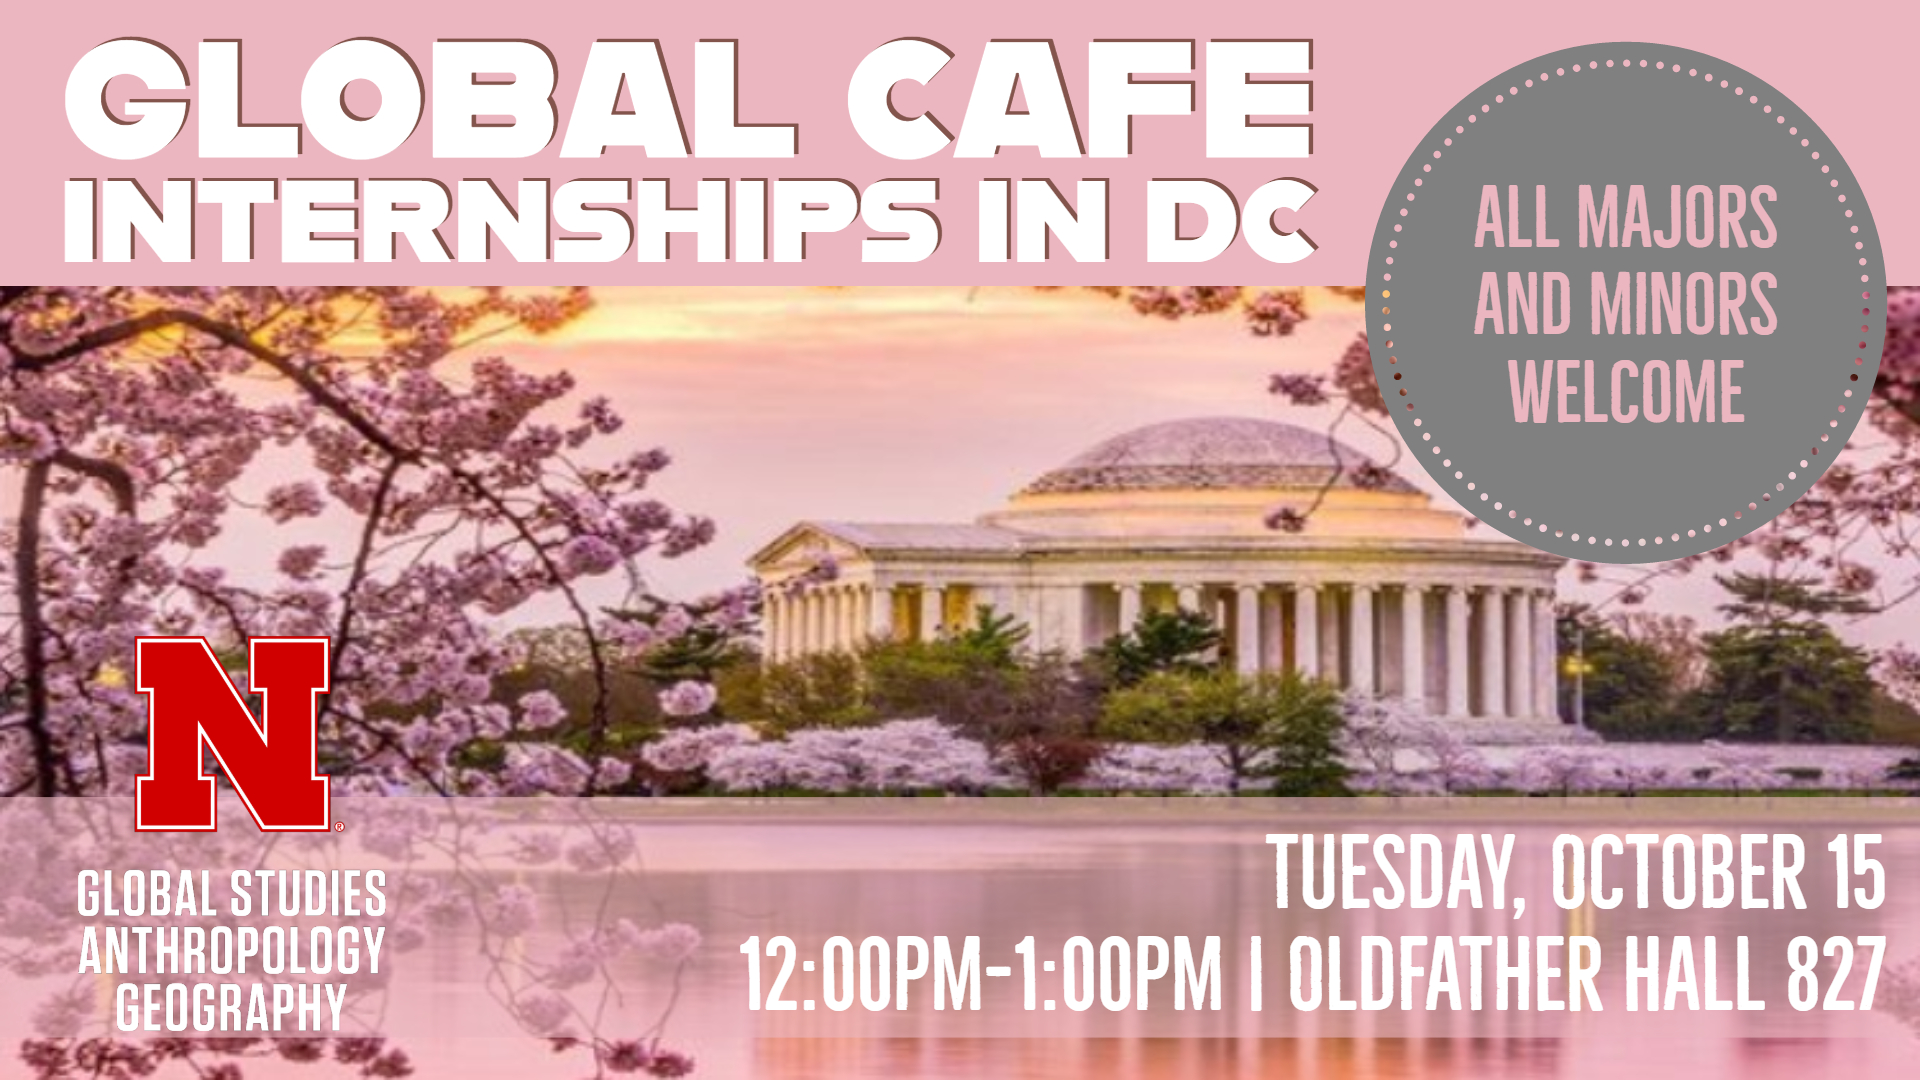 Global Cafe: Internships in DC